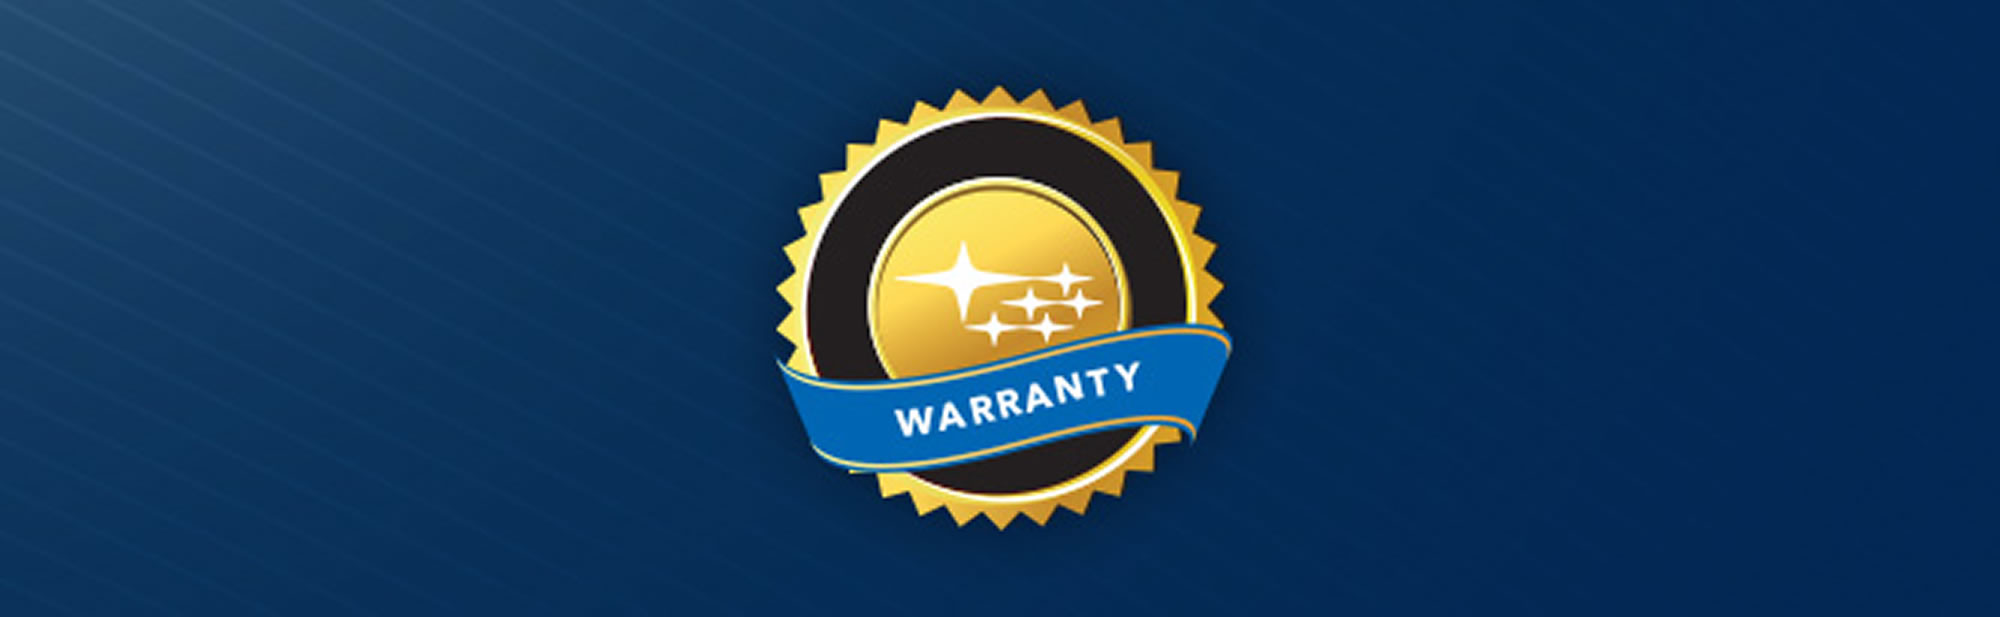 Subaru - a comprehensive warranty